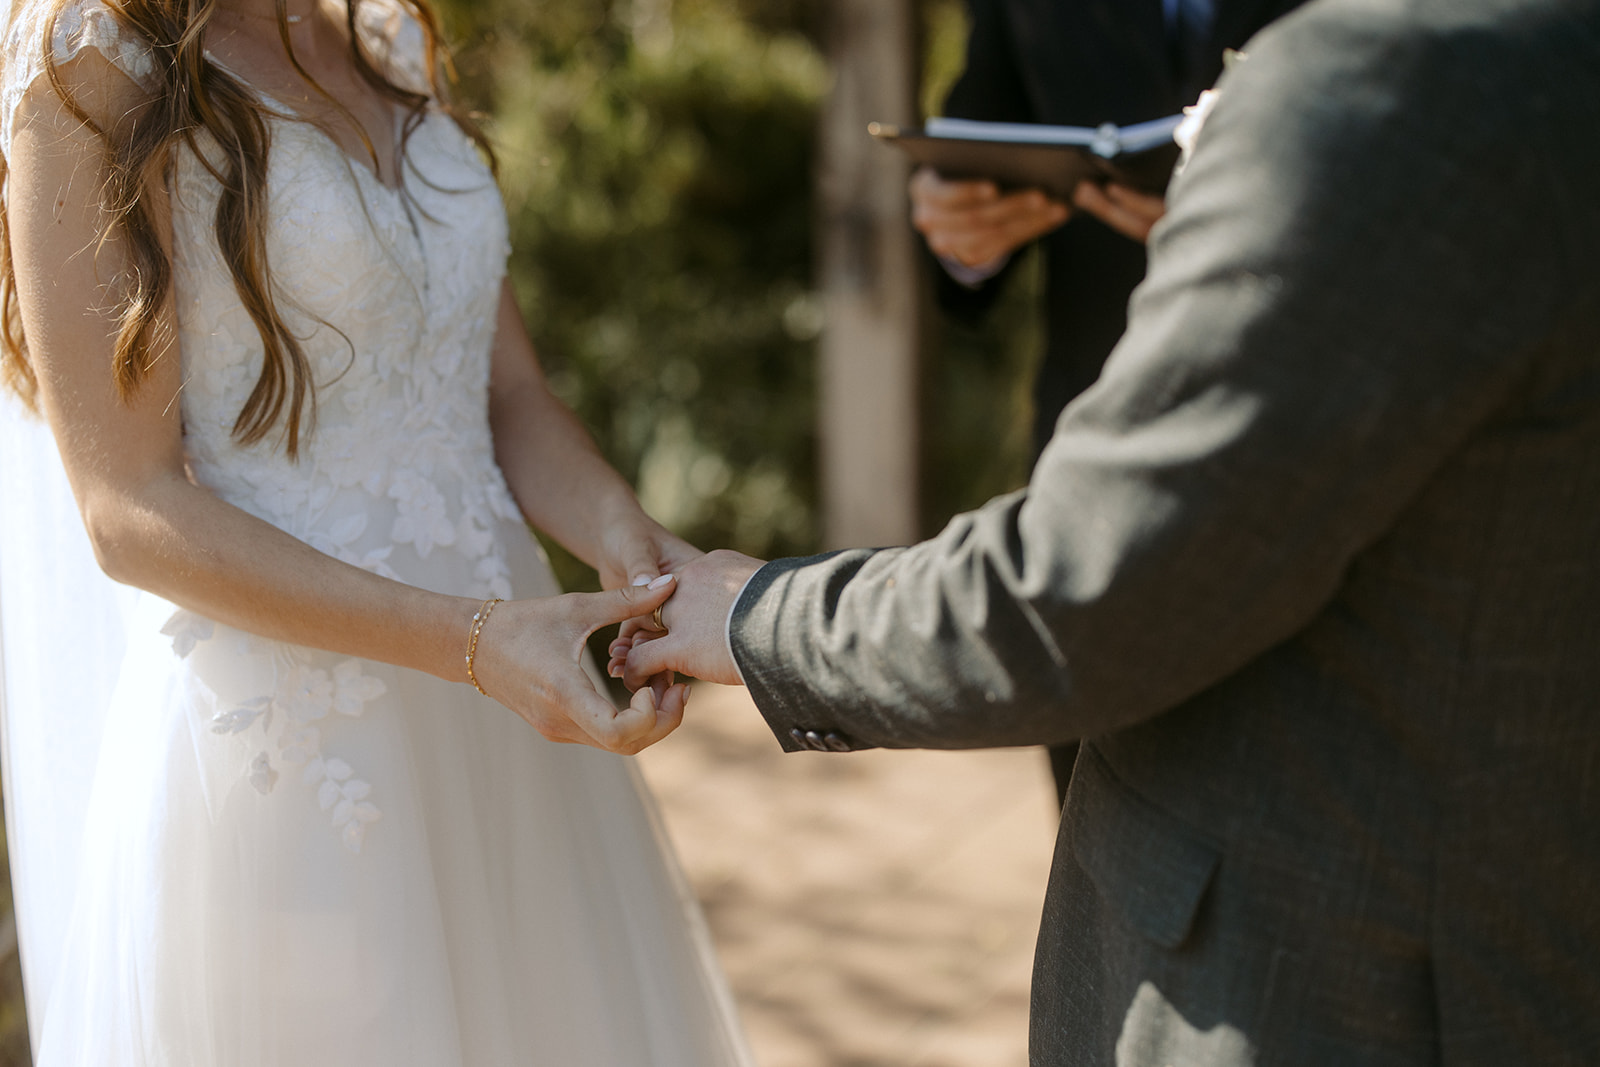 Bride puts ring on grooms finger during wedding ceremony at La Arboleda in California